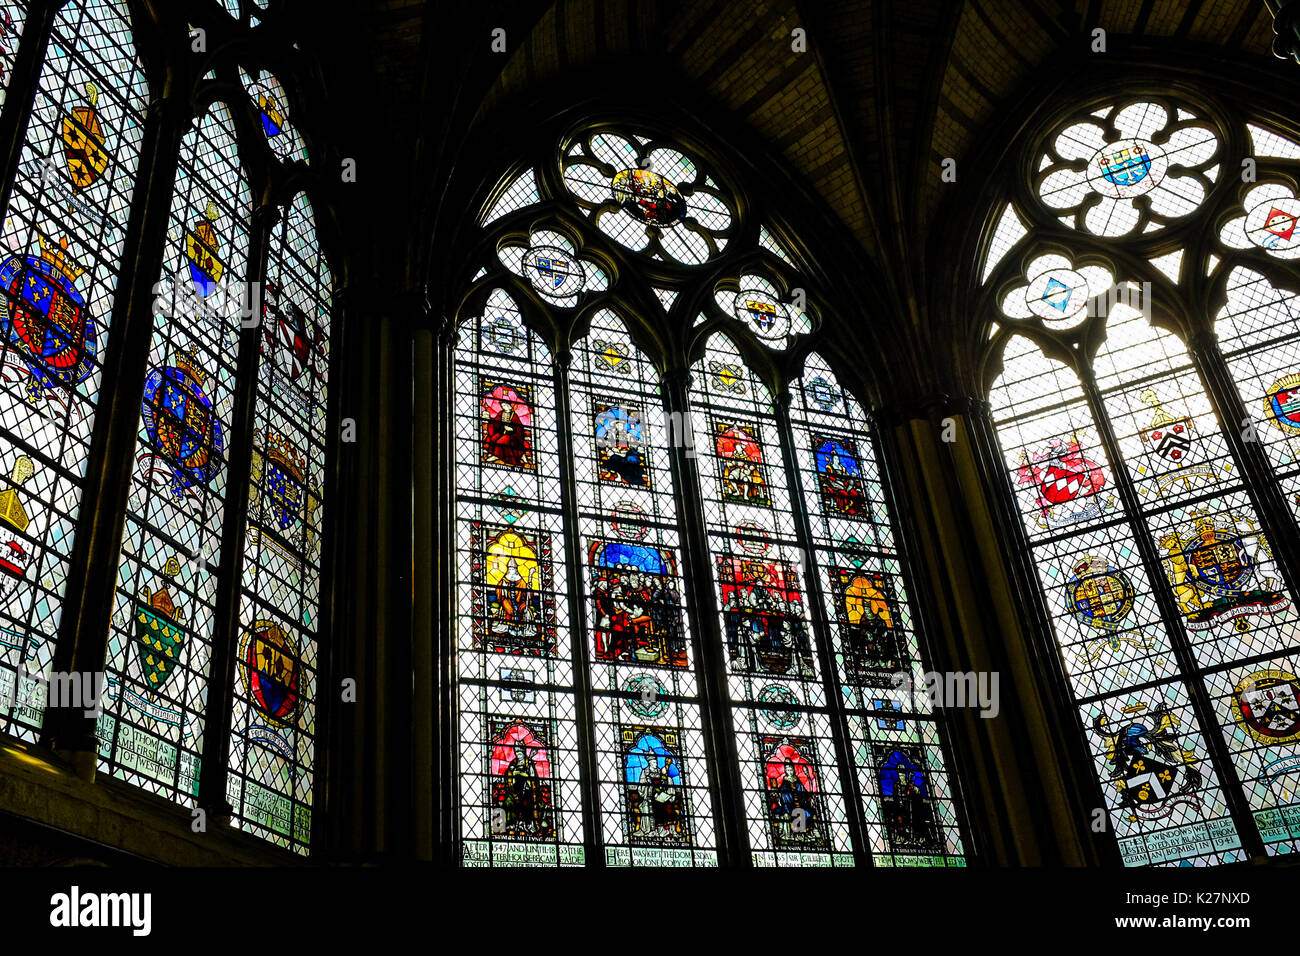 Vistas generales del interior y el exterior de la abadía de Westminster en Londres, Inglaterra, el 20 de septiembre de 2016. Foto de stock